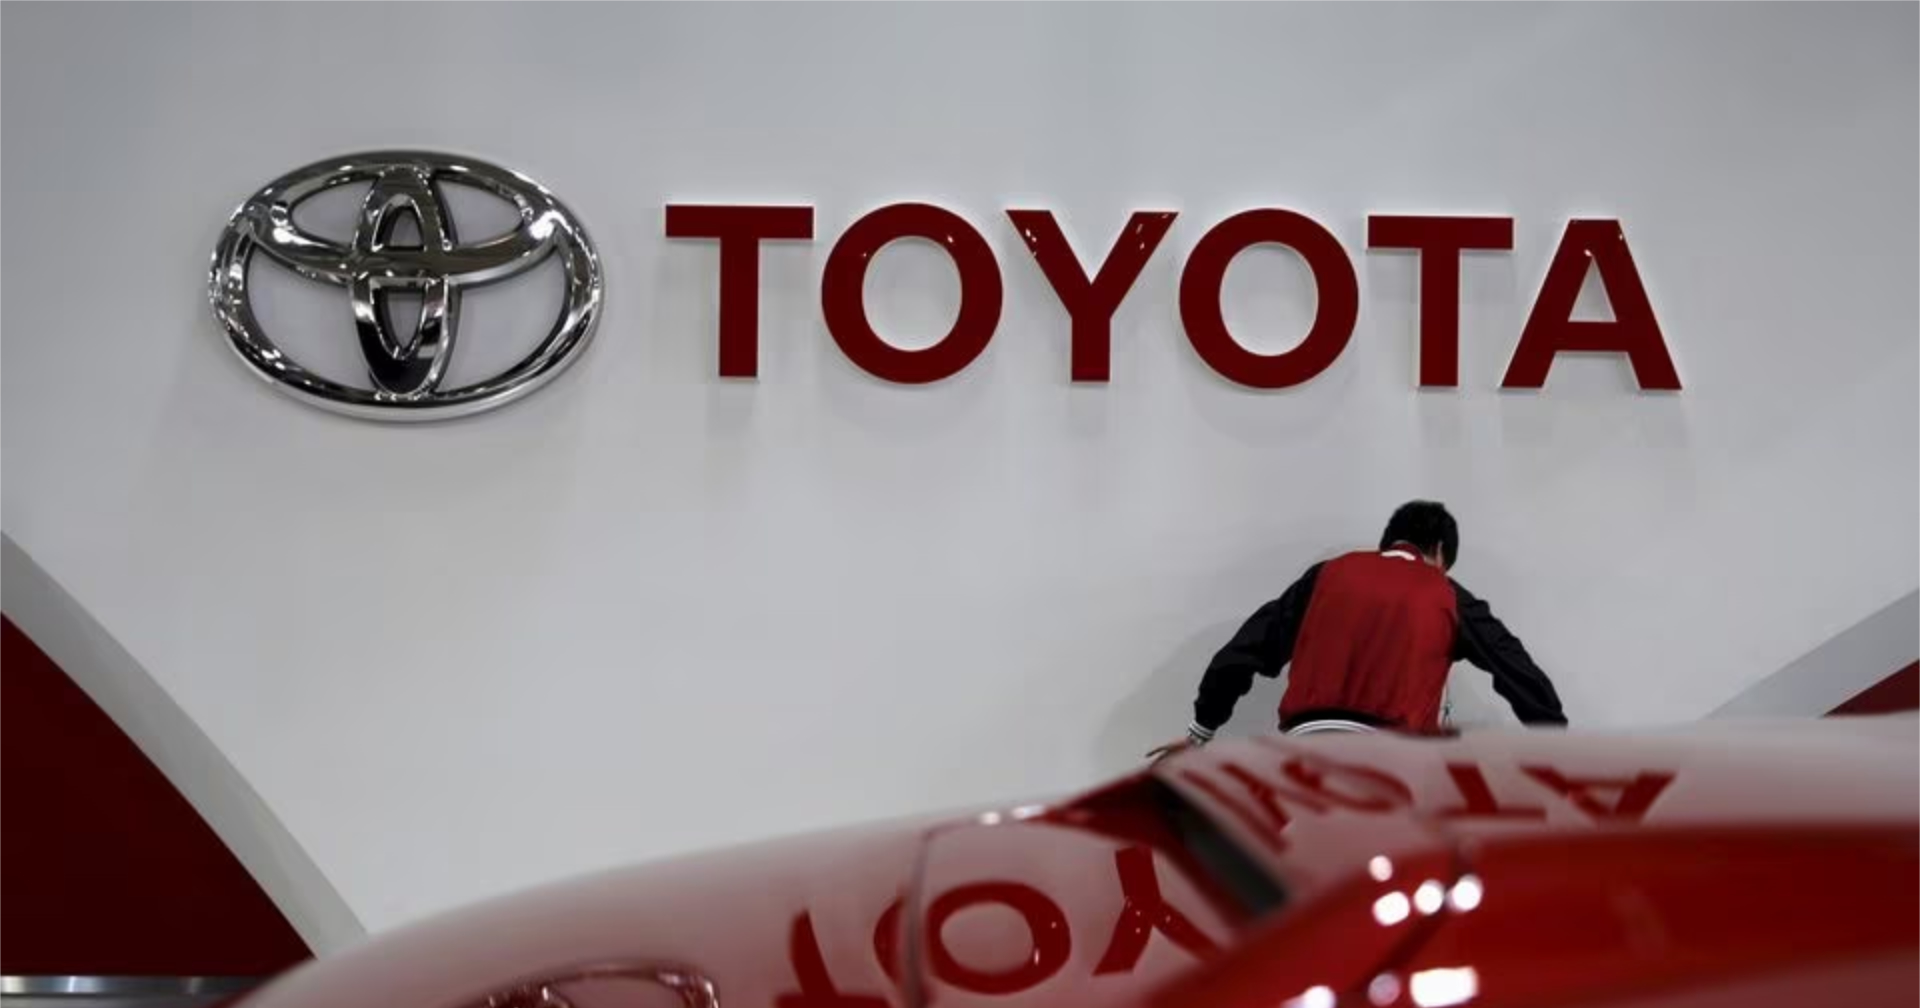 Toyota เร่งการผลิตอีวีตั้งเป้าให้มากกว่า 600,000 คันในปี 2025